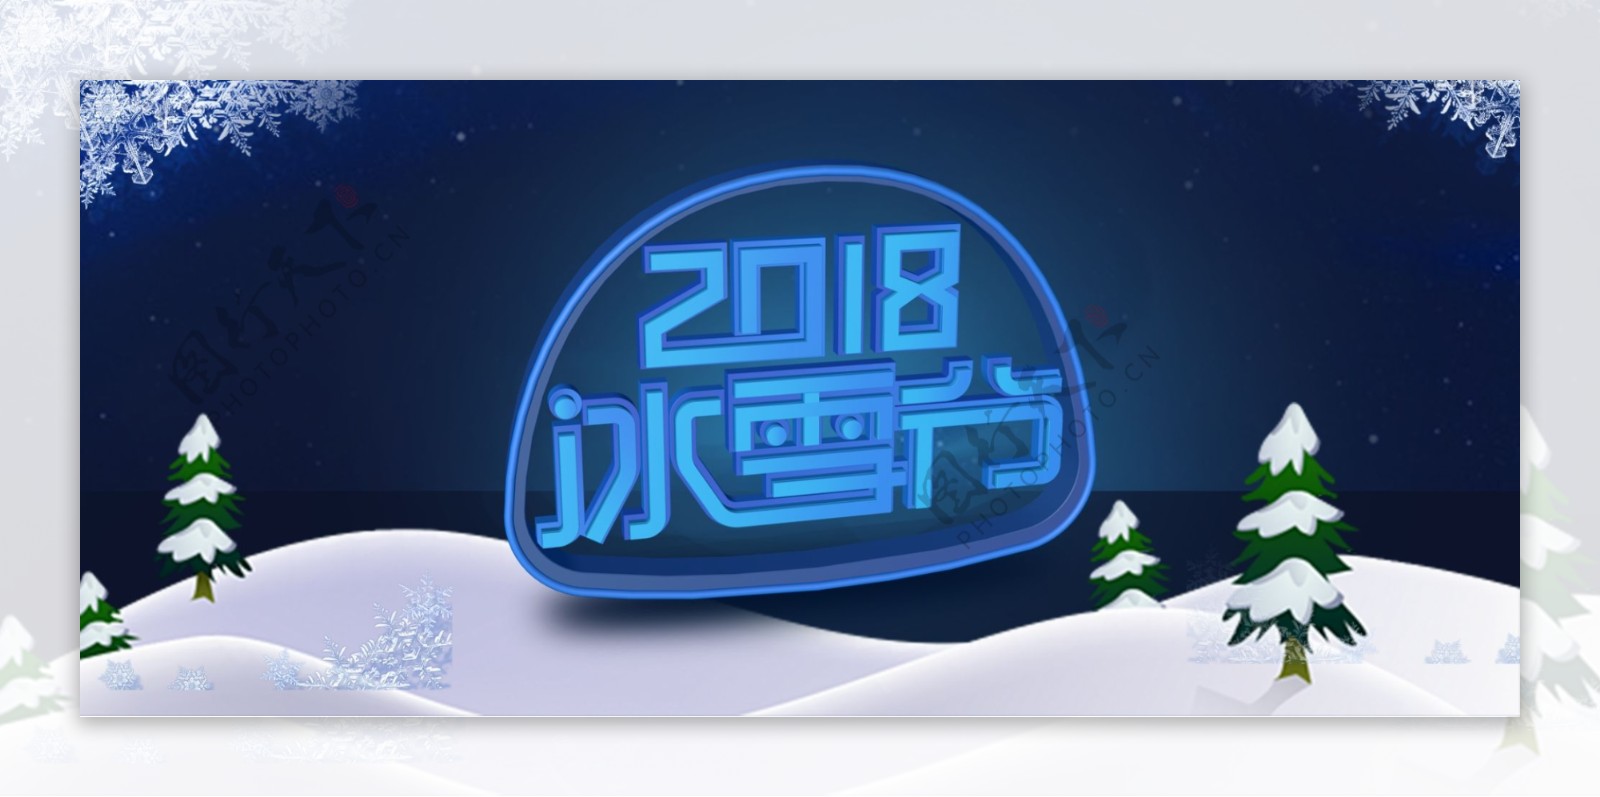 电商淘宝2018冰雪节蓝色背景标题设计